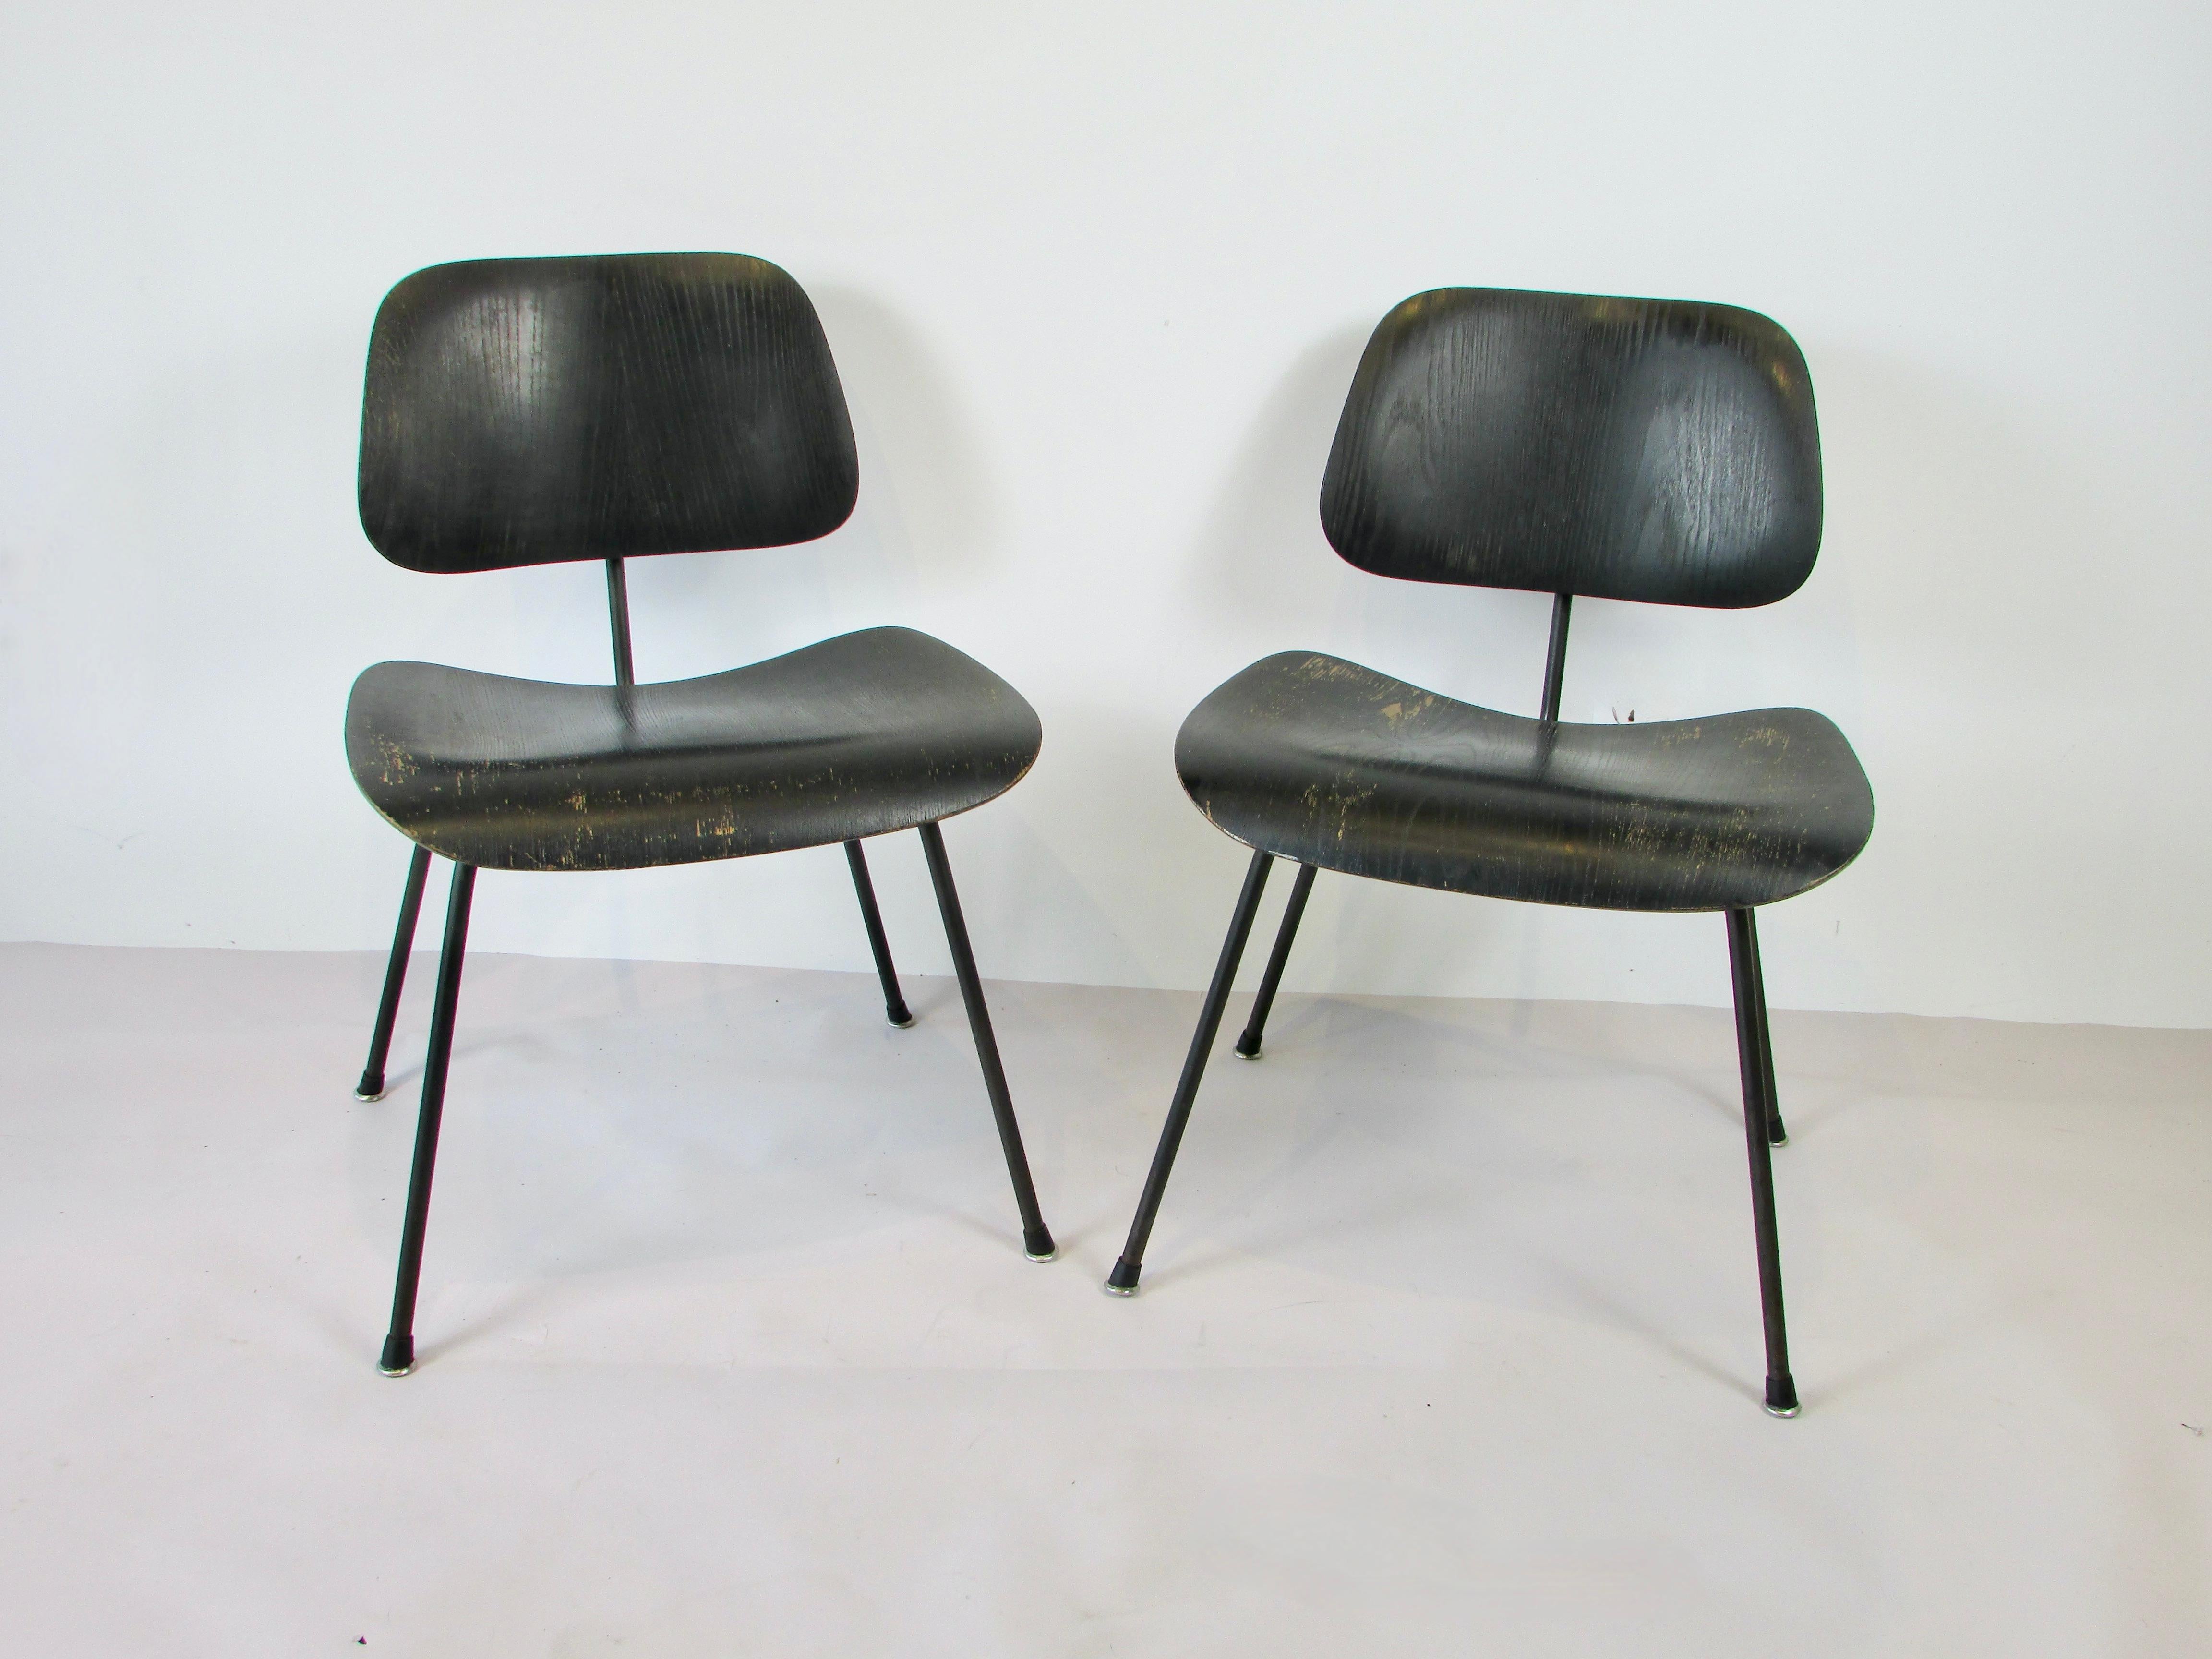 Paar frühe Produktion Dining Chair Metall DCM von der Charles und Ray Eames Team entworfen. Schwarze schmiedeeiserne Gestelle tragen Sitze und Rückenlehnen aus schwarzem, anilingefärbtem Holz. Finish zeigt Verschleiß und Alter als Patina mehr als